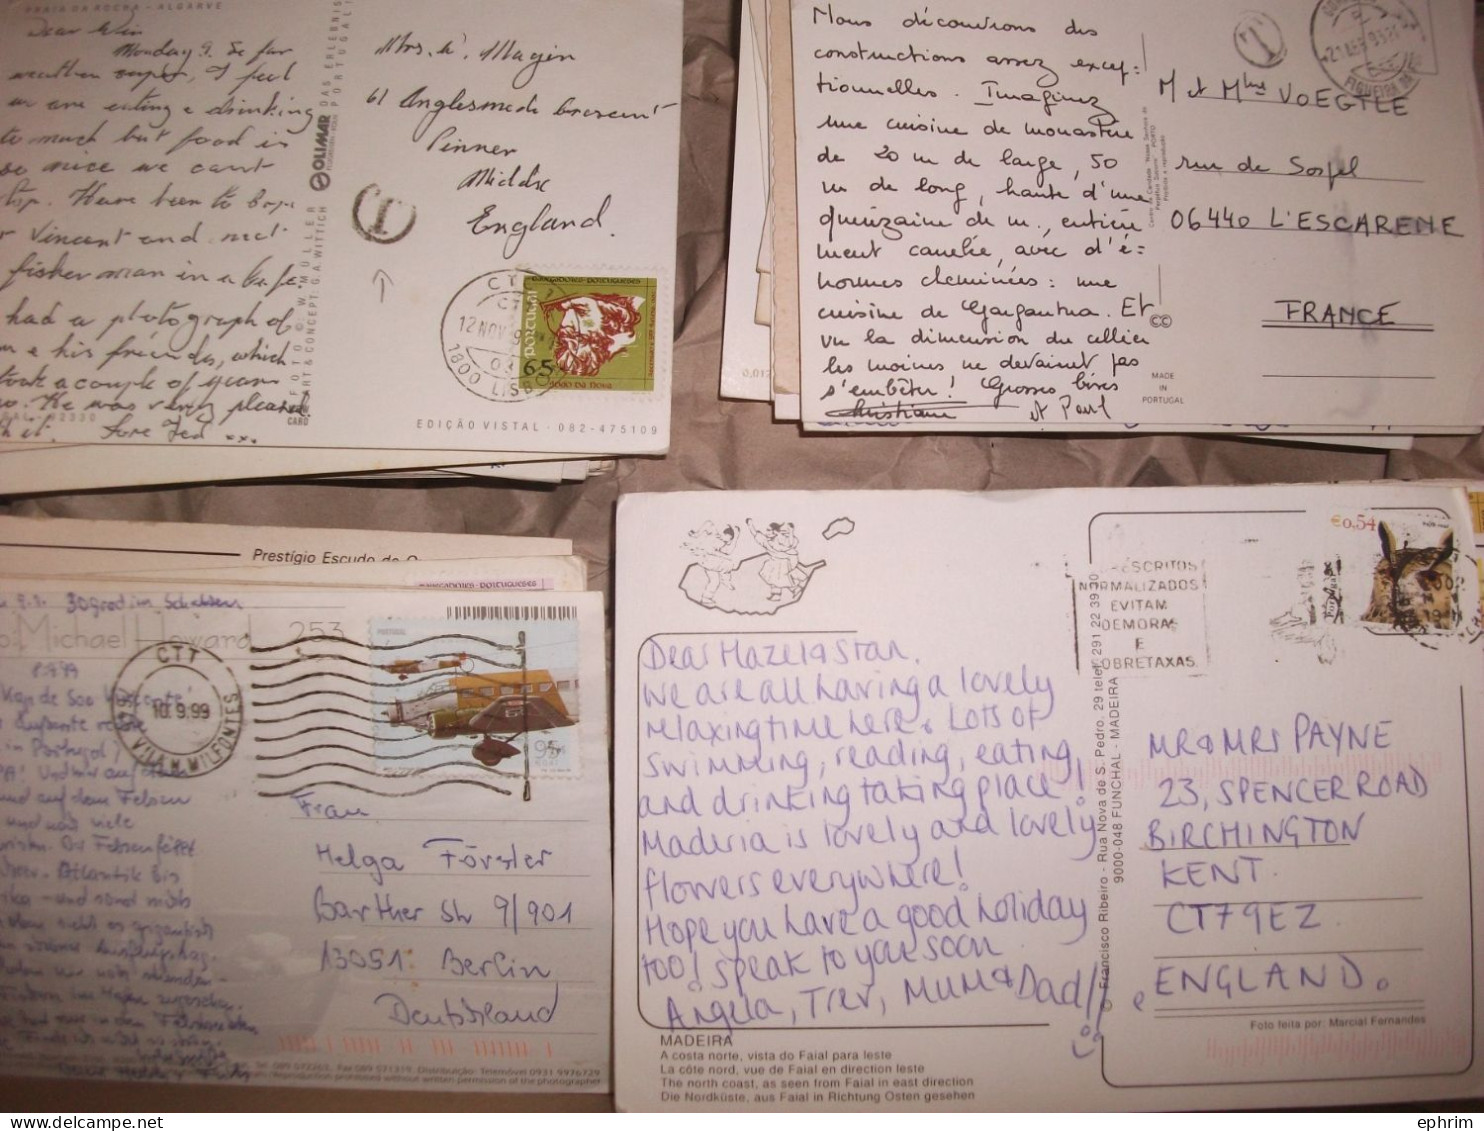 PORTUGAL Gros lot varié de + 2000 Cartes Postales Affranchies Timbres Timbre Stamp Picture Postcard Bilhete Postal Sello